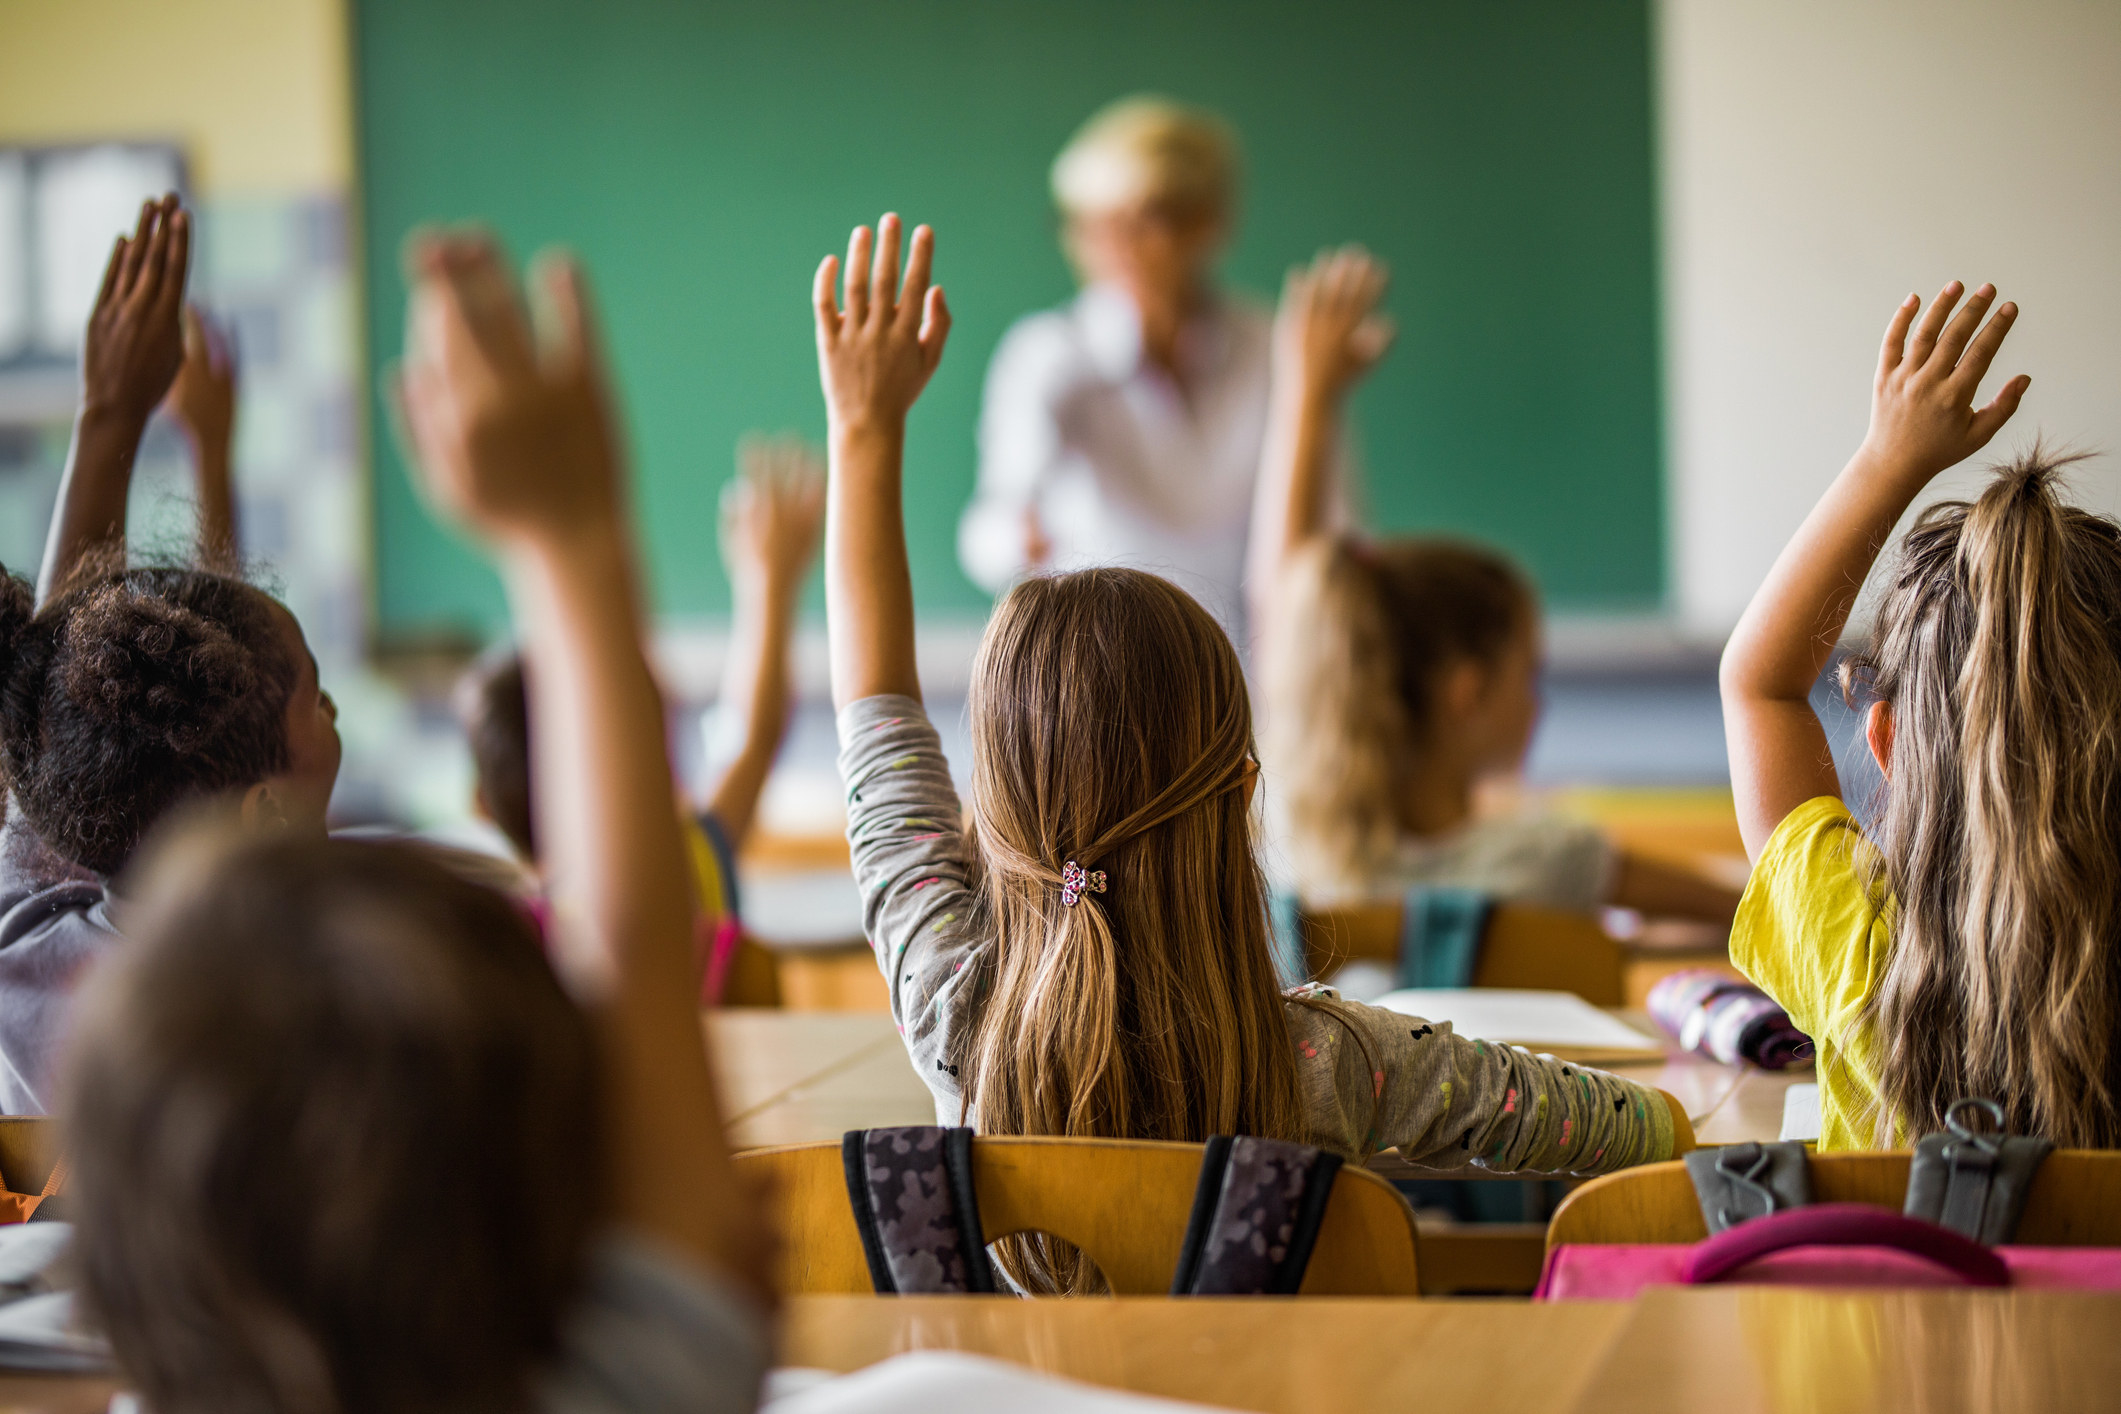 A class of children raise their hands in a classroom